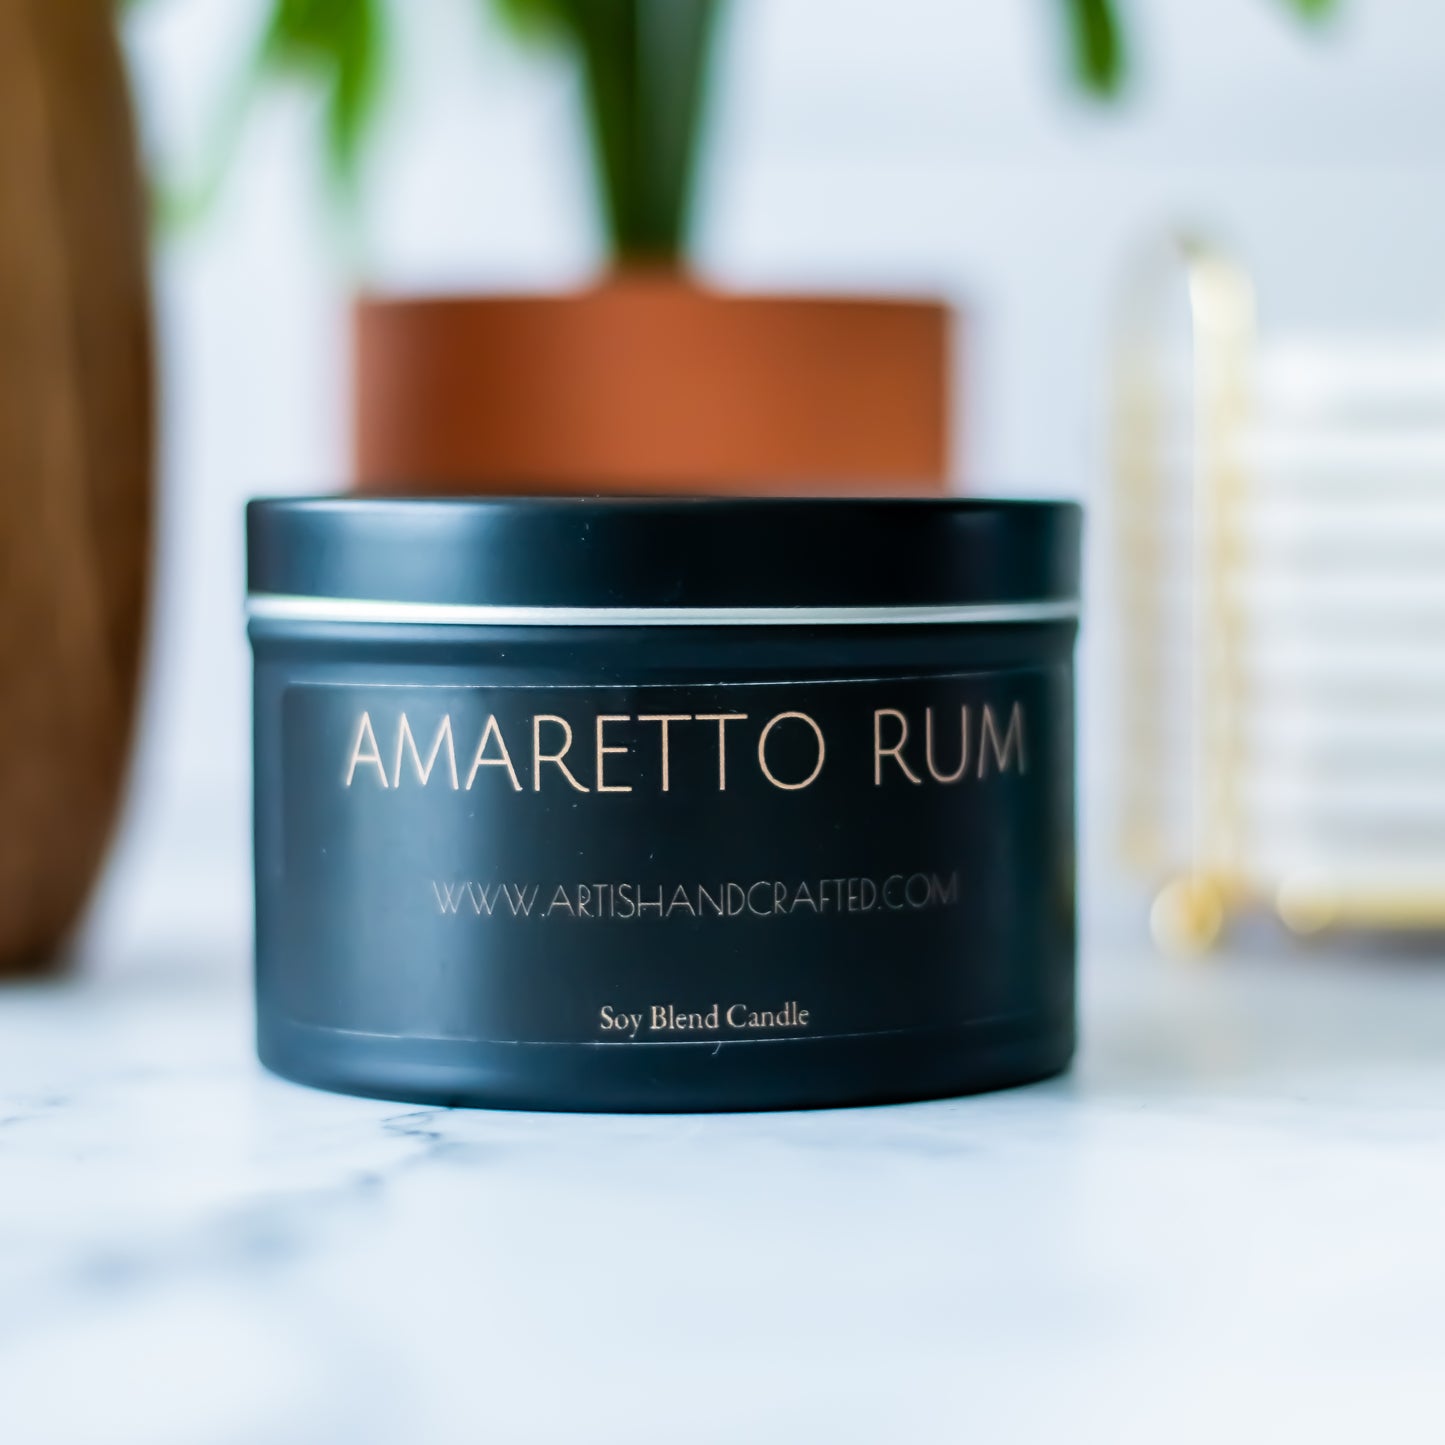 Amaretto Rum